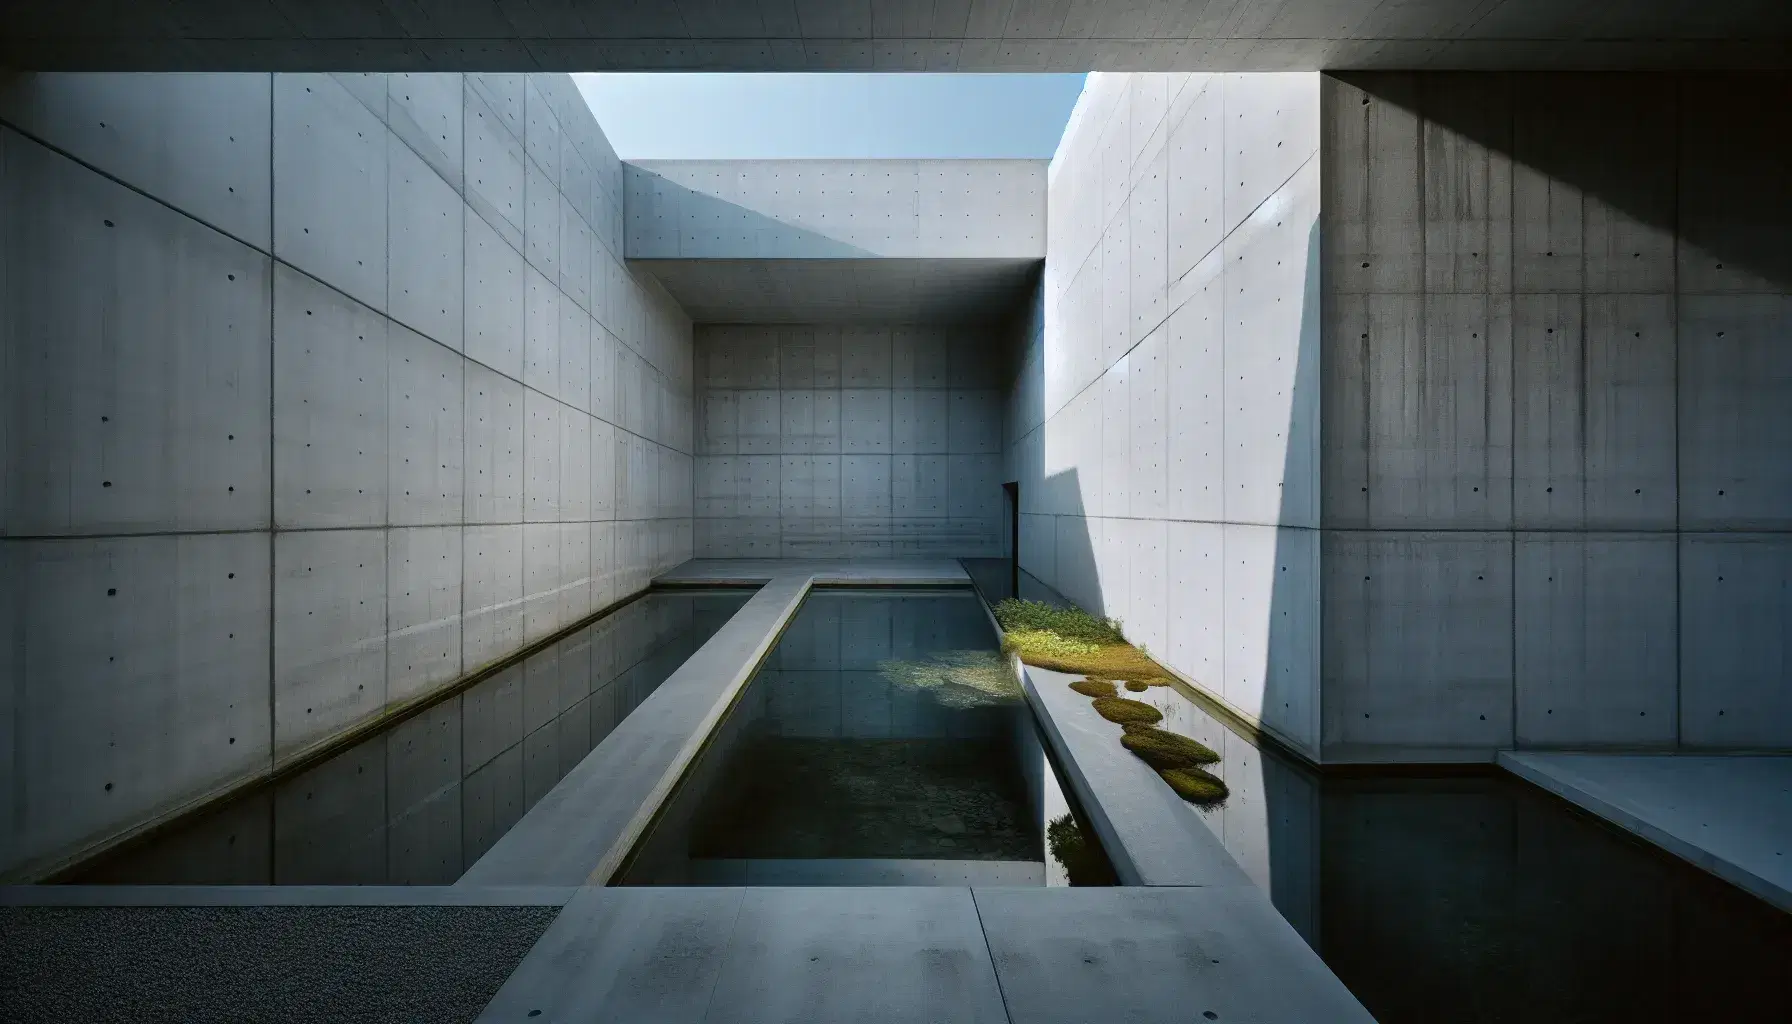 Estructura arquitectónica de concreto al estilo de Tadao Ando con paredes texturizadas, juego de luz y sombra, y estanque reflejante en un entorno minimalista y sereno.